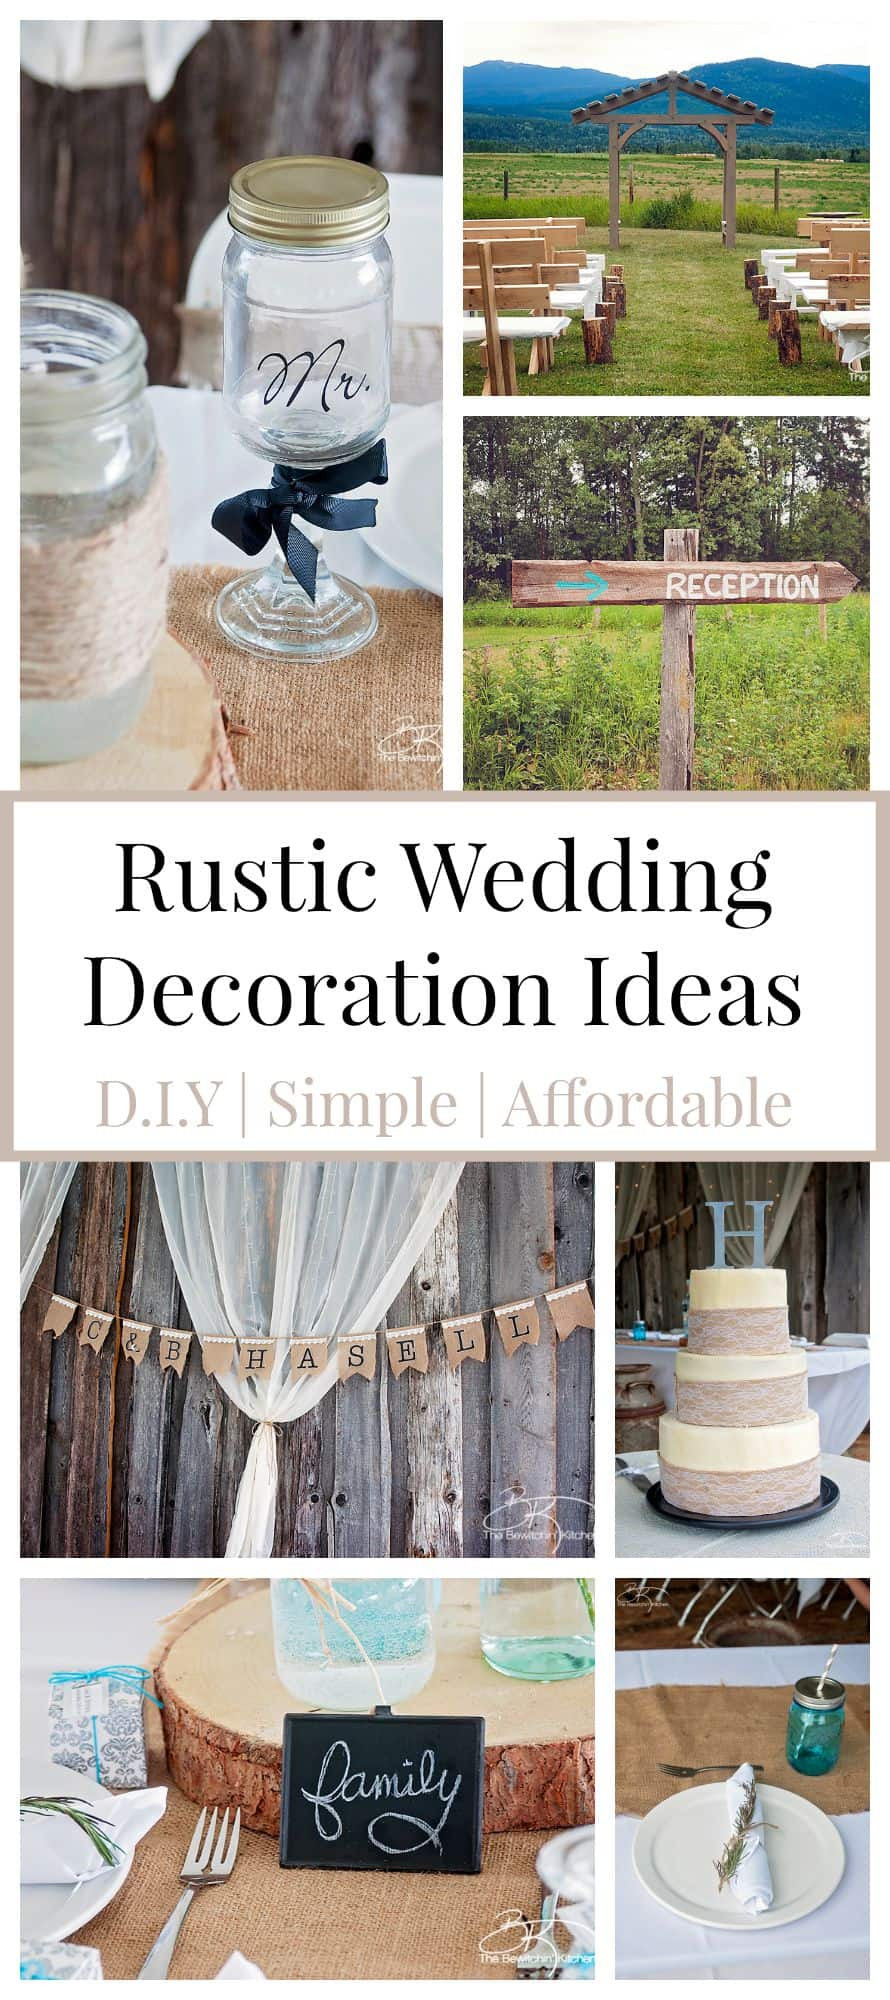 Diy Rustic Wedding Decorations
 Rustic Wedding Ideas That Are DIY & Affordable